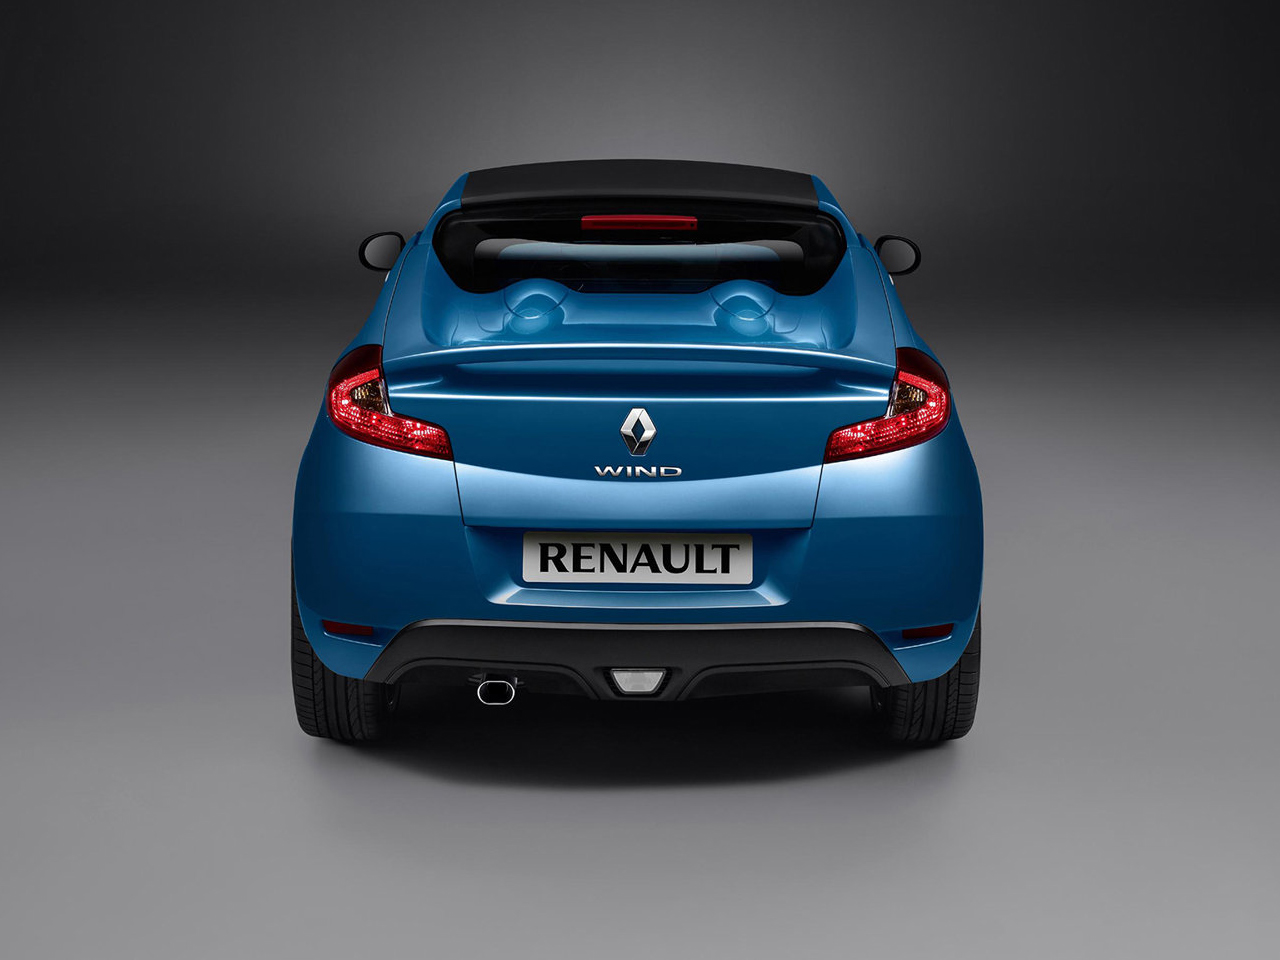 Renault%20Wind_20100202170718.jpg